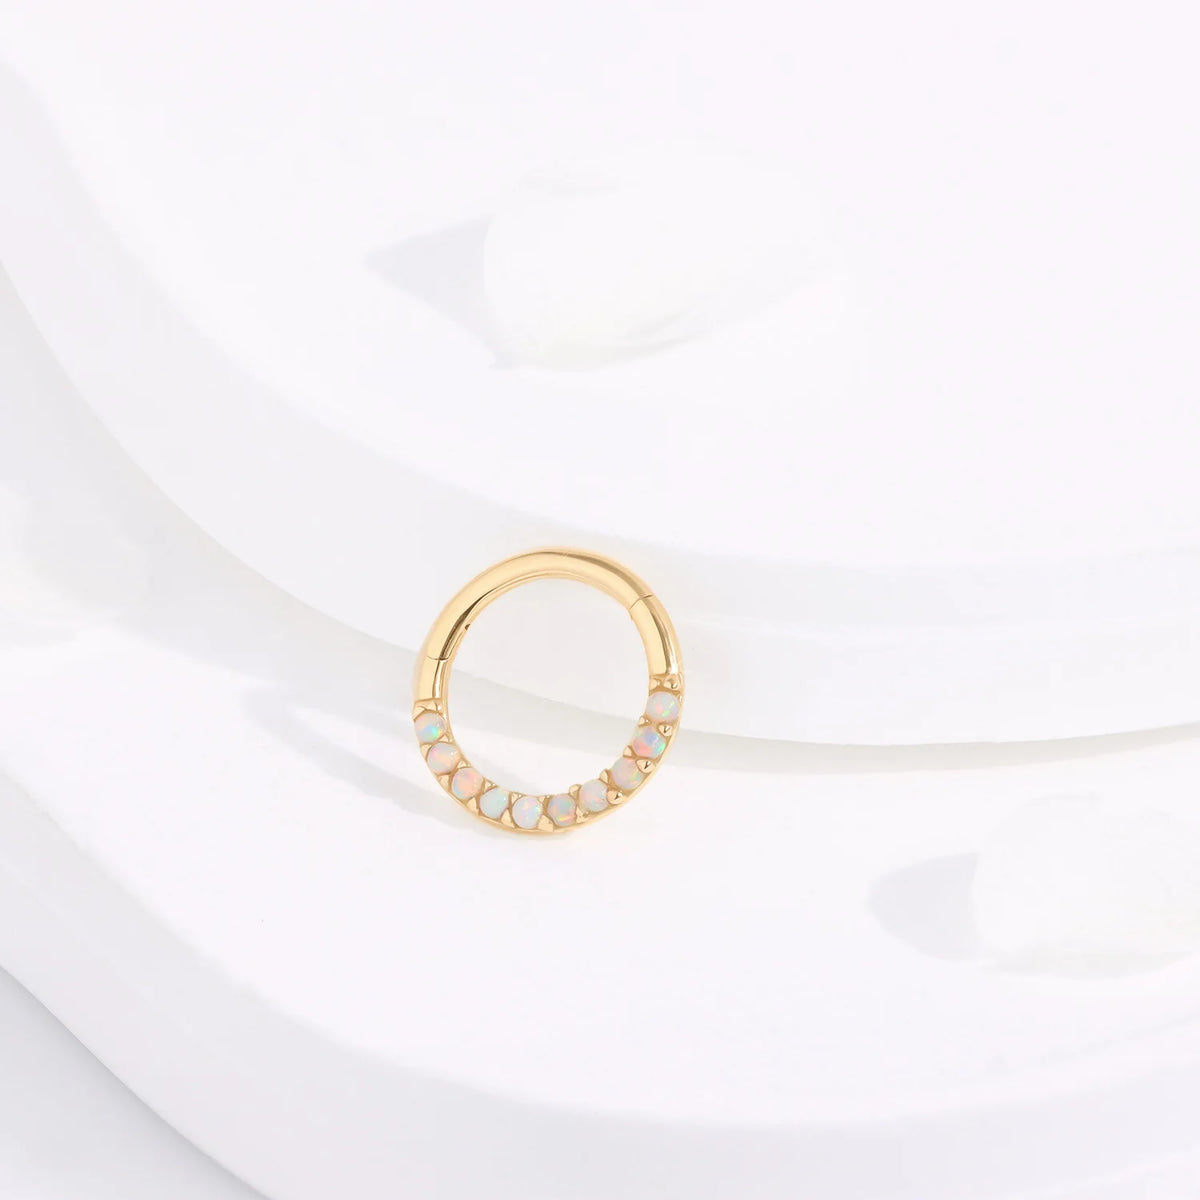 Opal Nasenpiercing 14K Gold Opal Creolenohrring Scharniersegment Clicker Septum Ring Daith Piercing